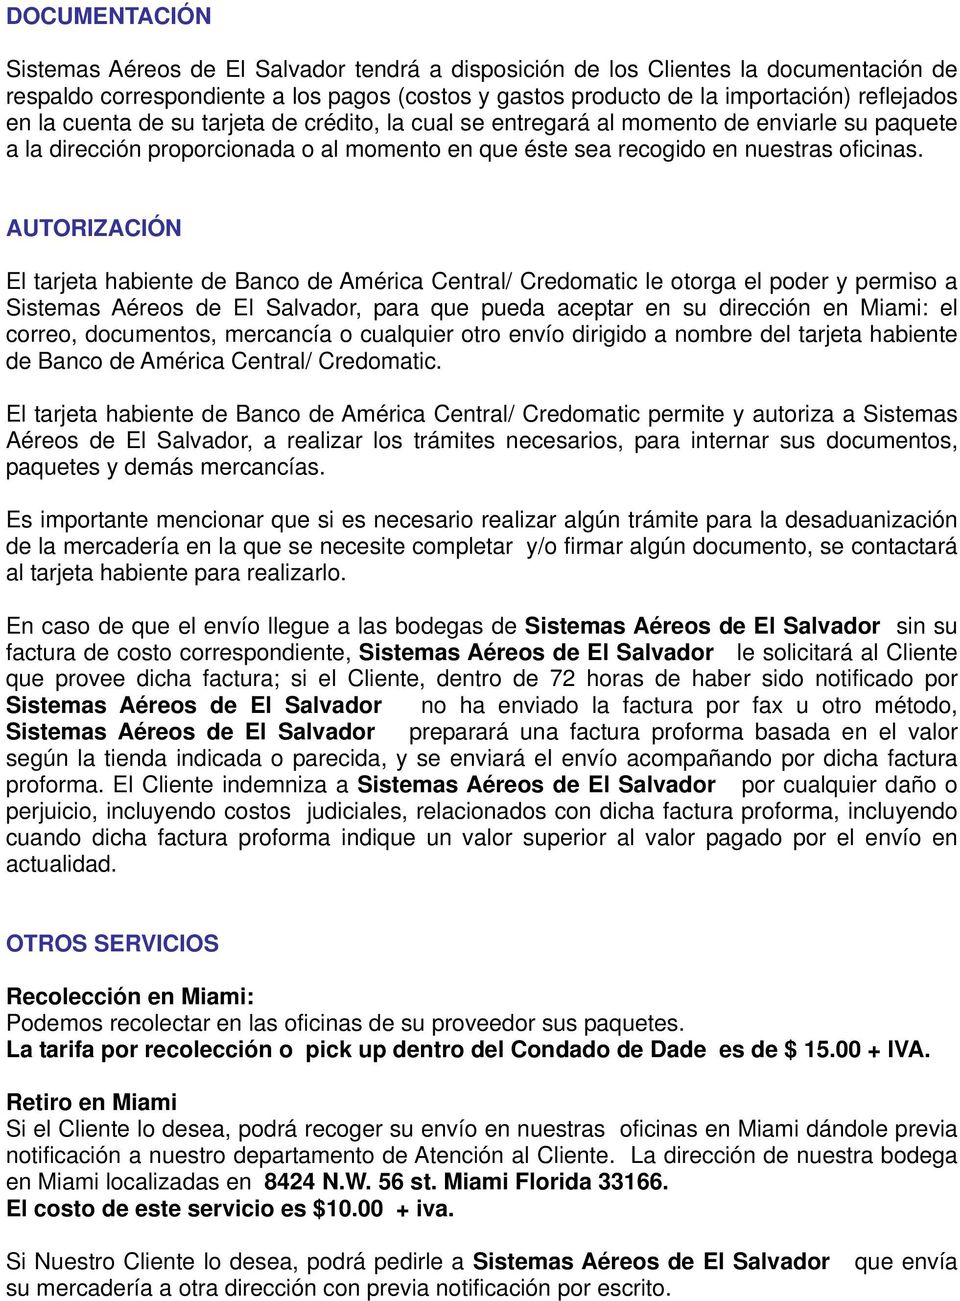 AUTORIZACIÓN El tarjeta habiente de Banco de América Central/ Credomatic le otorga el poder y permiso a Sistemas Aéreos de El Salvador, para que pueda aceptar en su dirección en Miami: el correo,